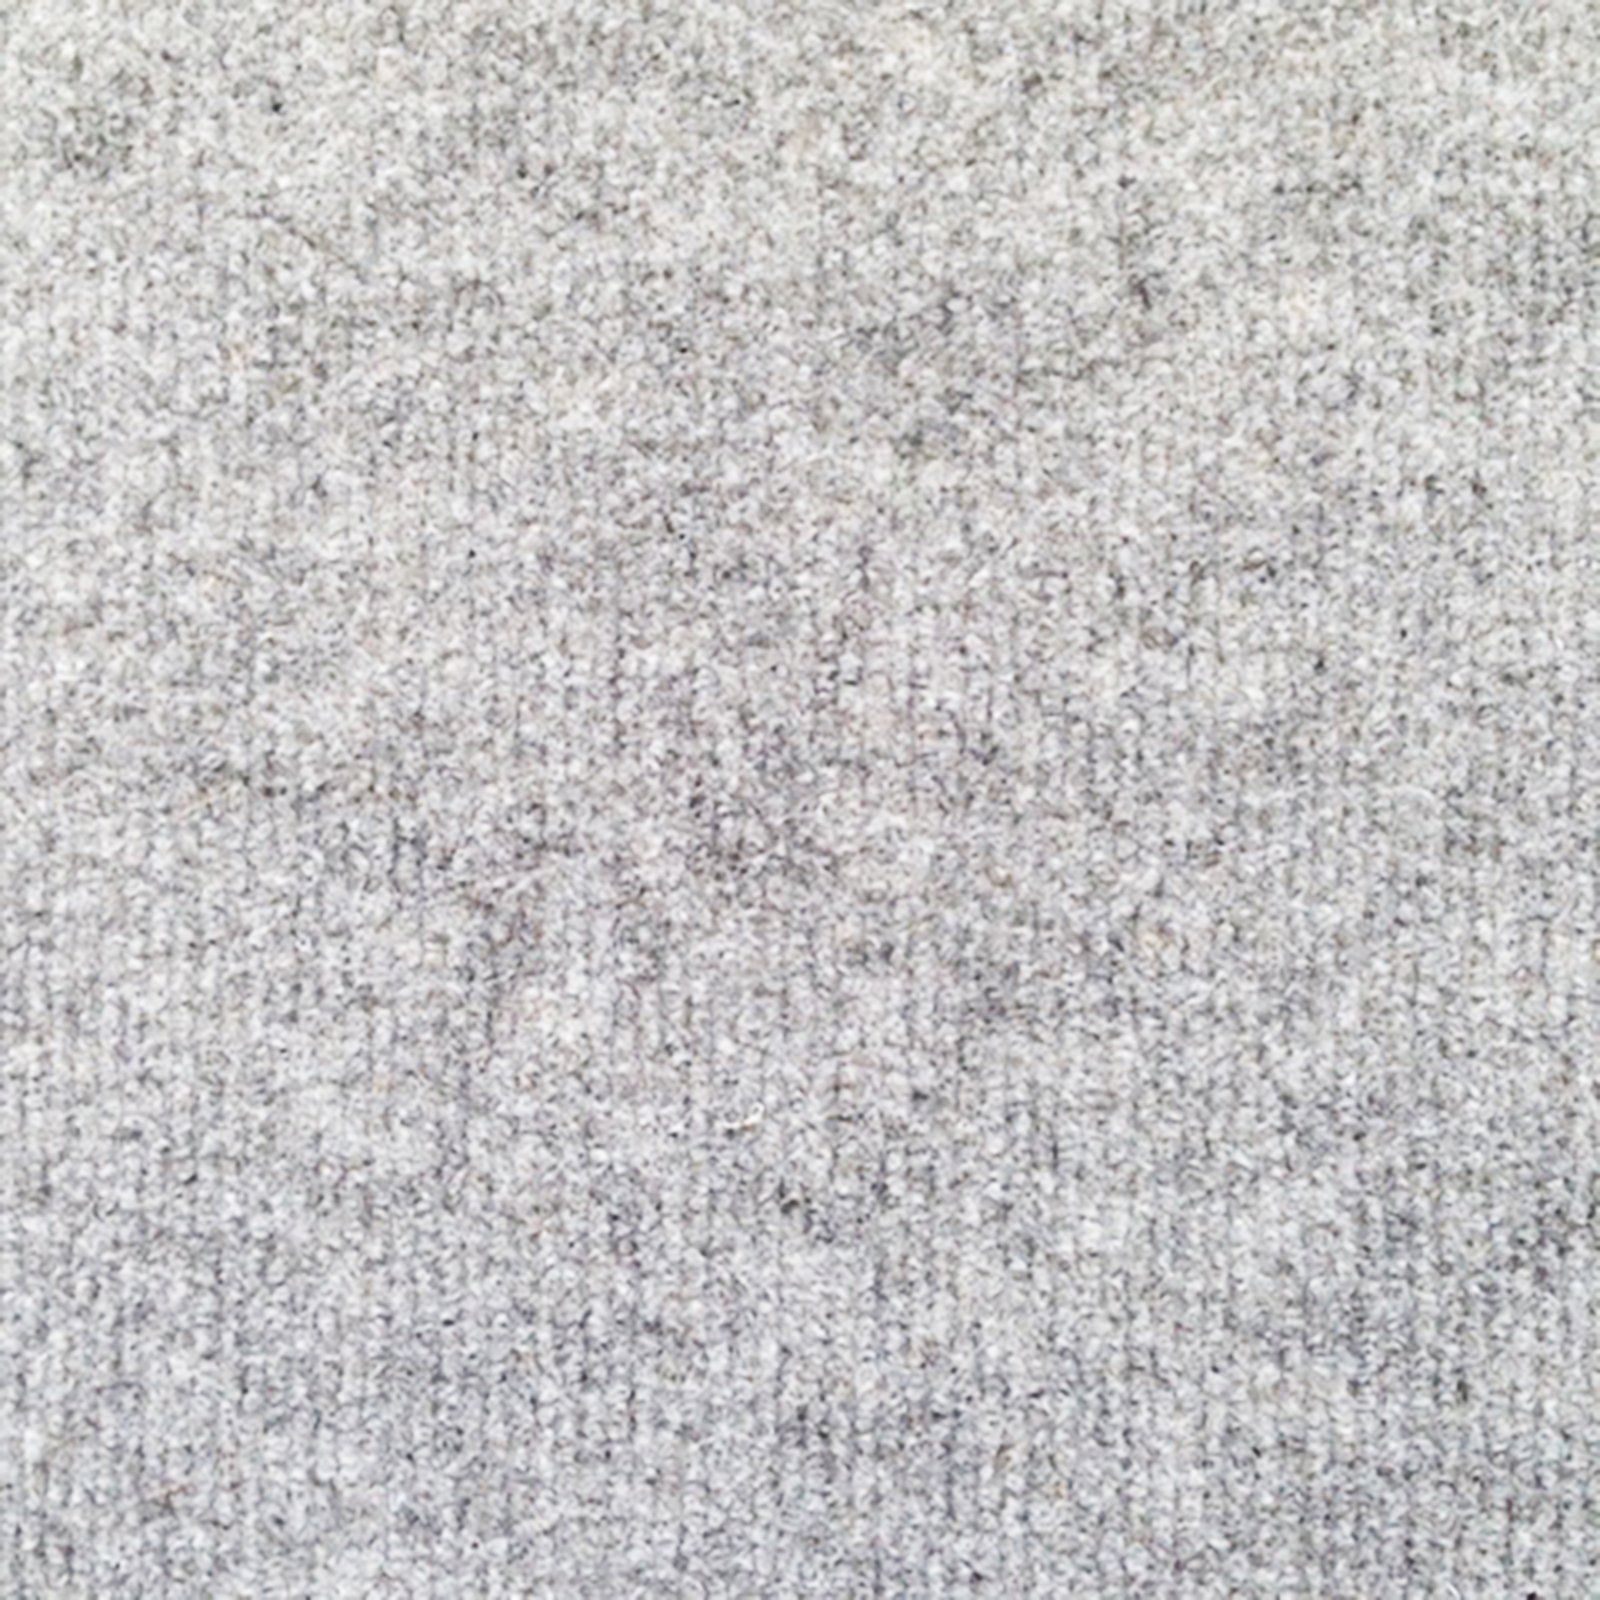 Teppichboden - grau - 4 Meter breit | Online bei ROLLER kaufen | Kurzflor-Teppiche